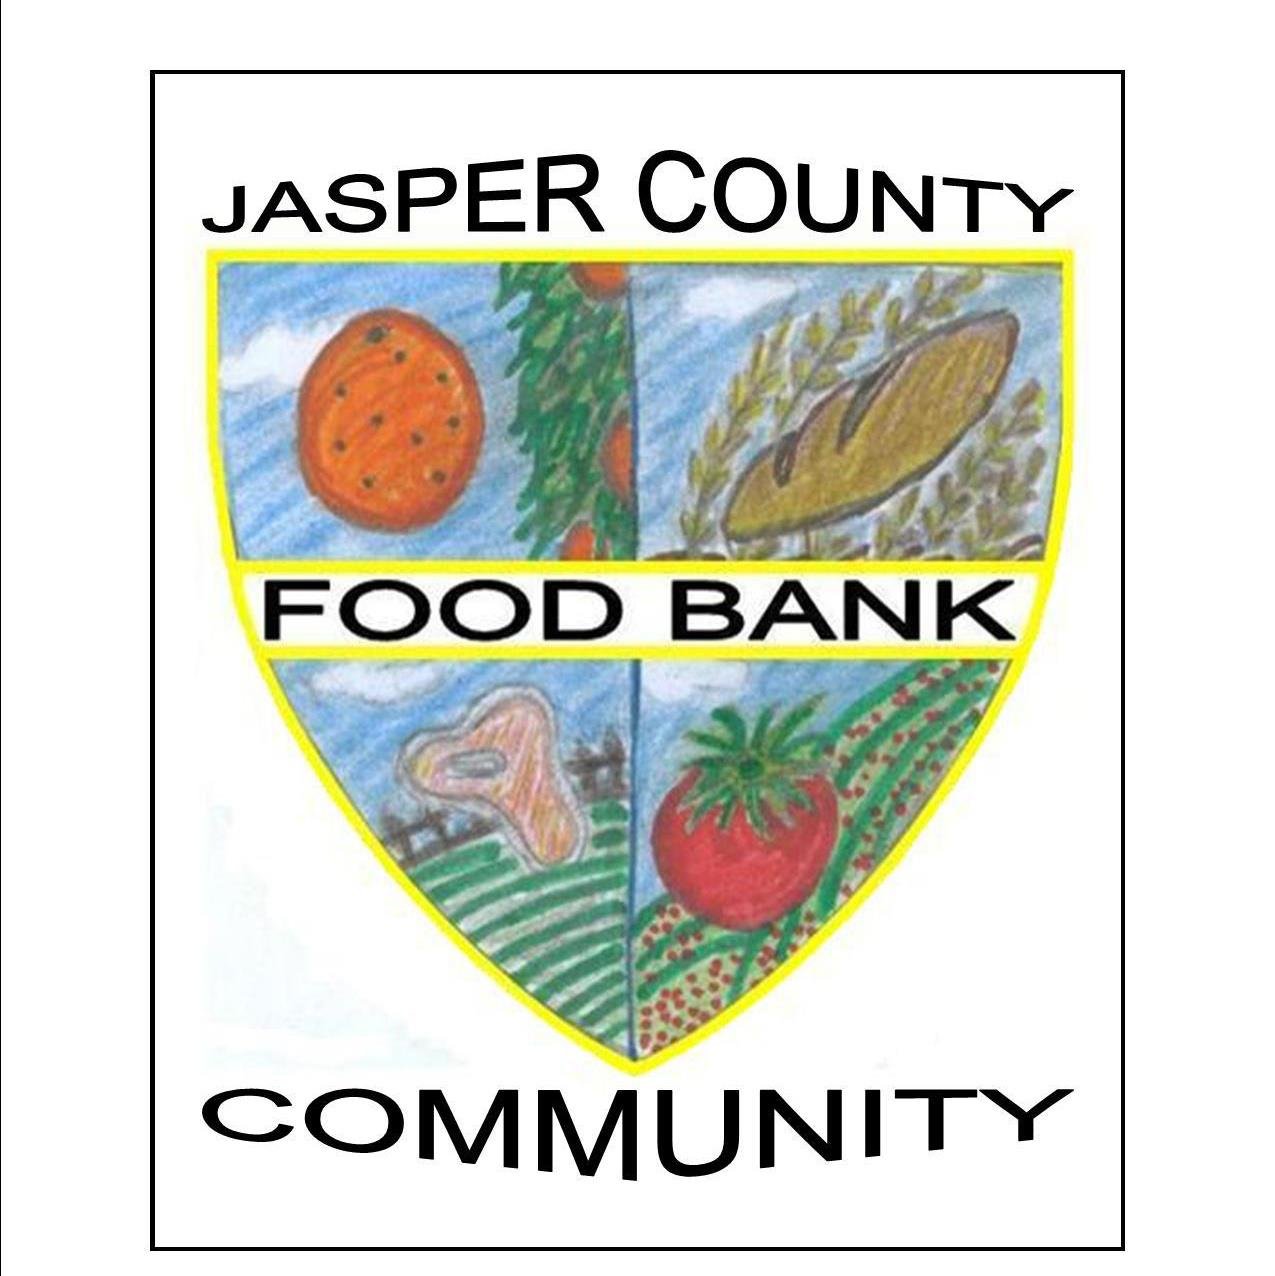 Jasper County Community Food Bank